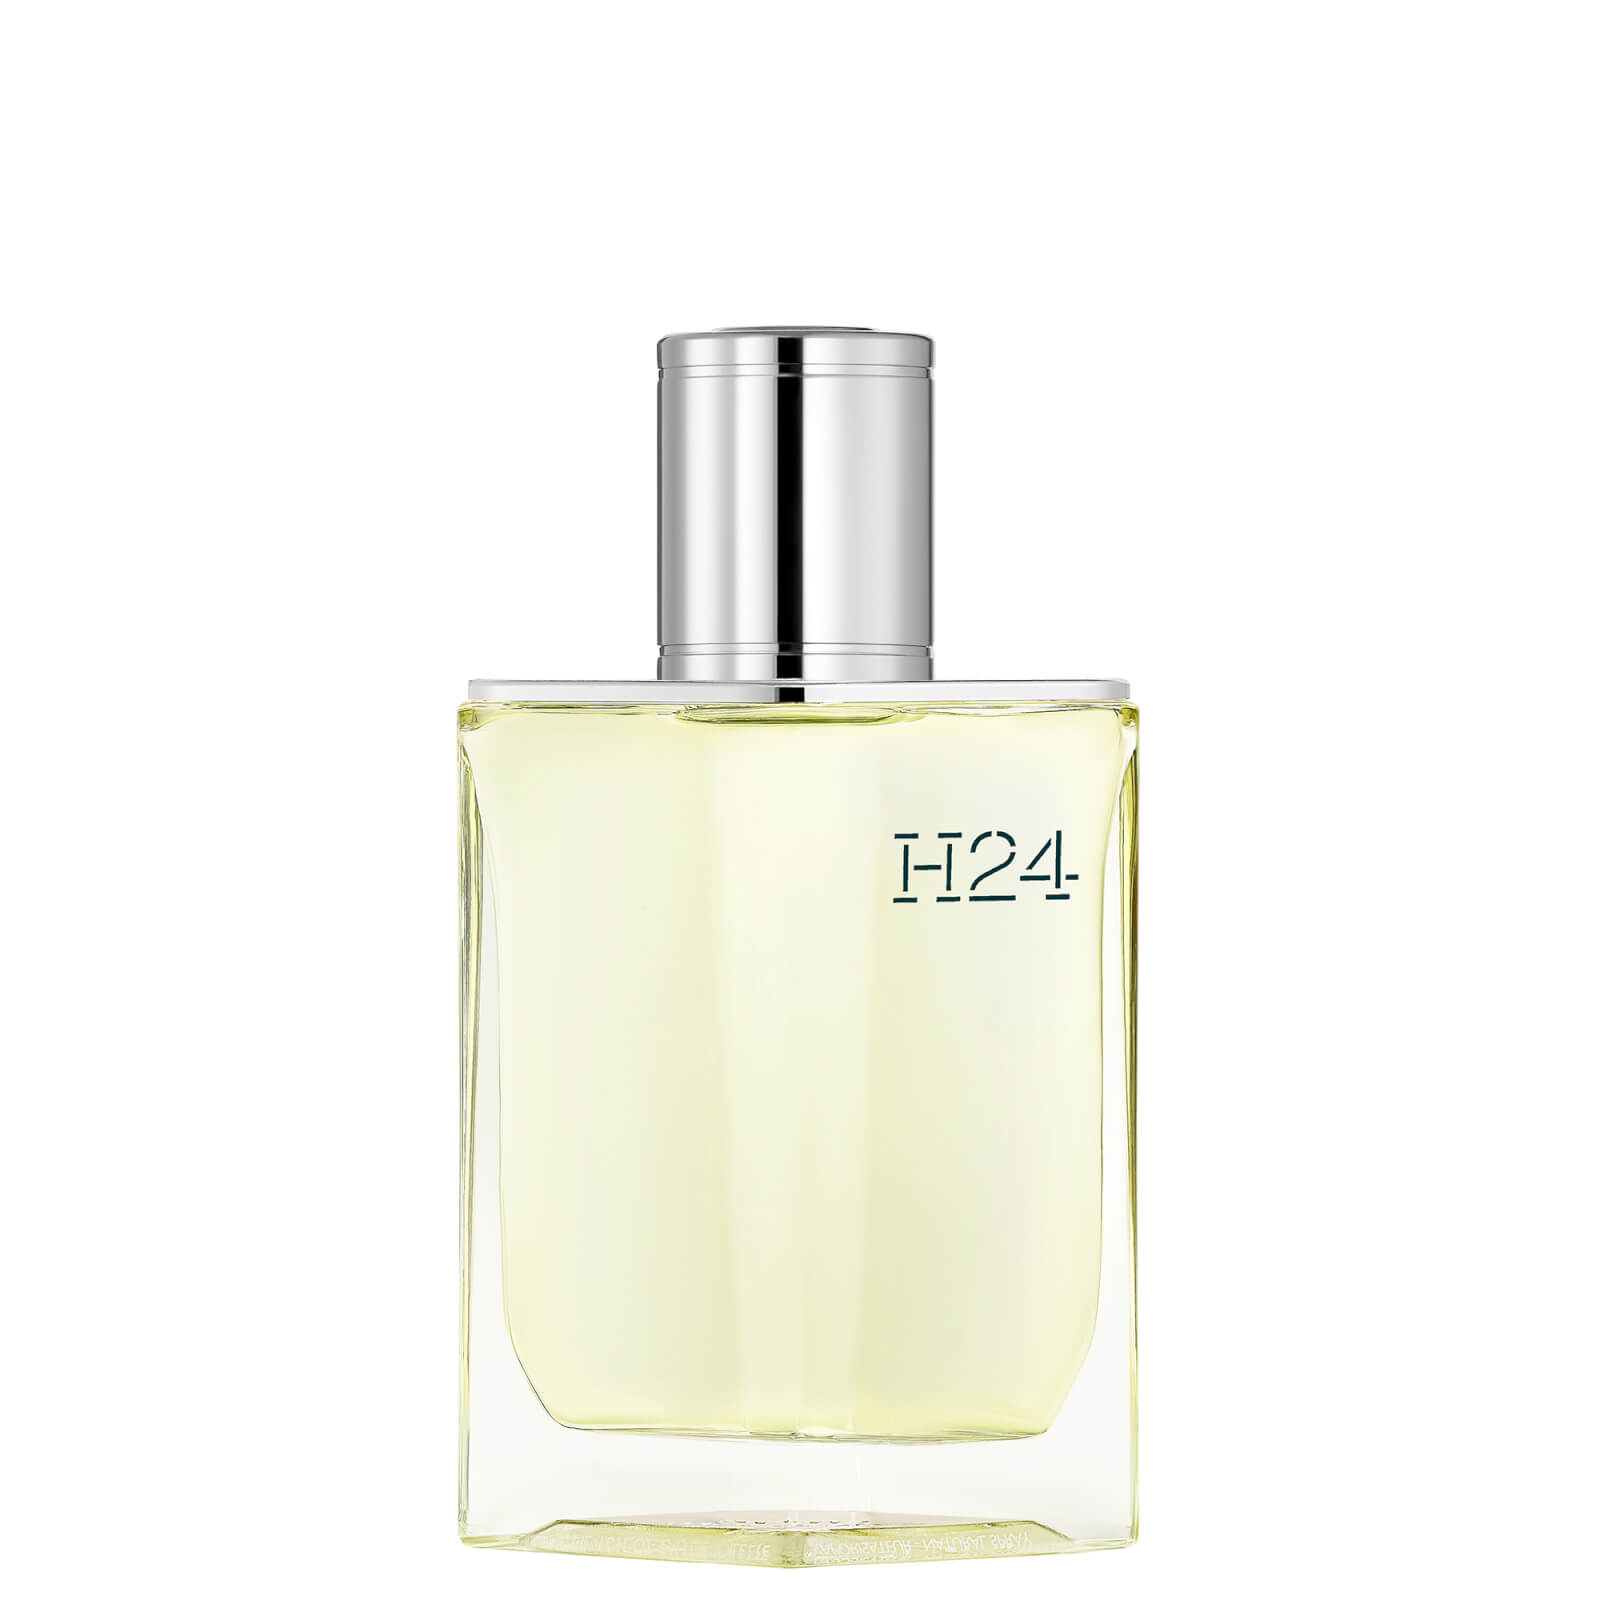 Photos - Women's Fragrance Hermes Hermès H24 Eau de Toilette 50ml 101563V0 